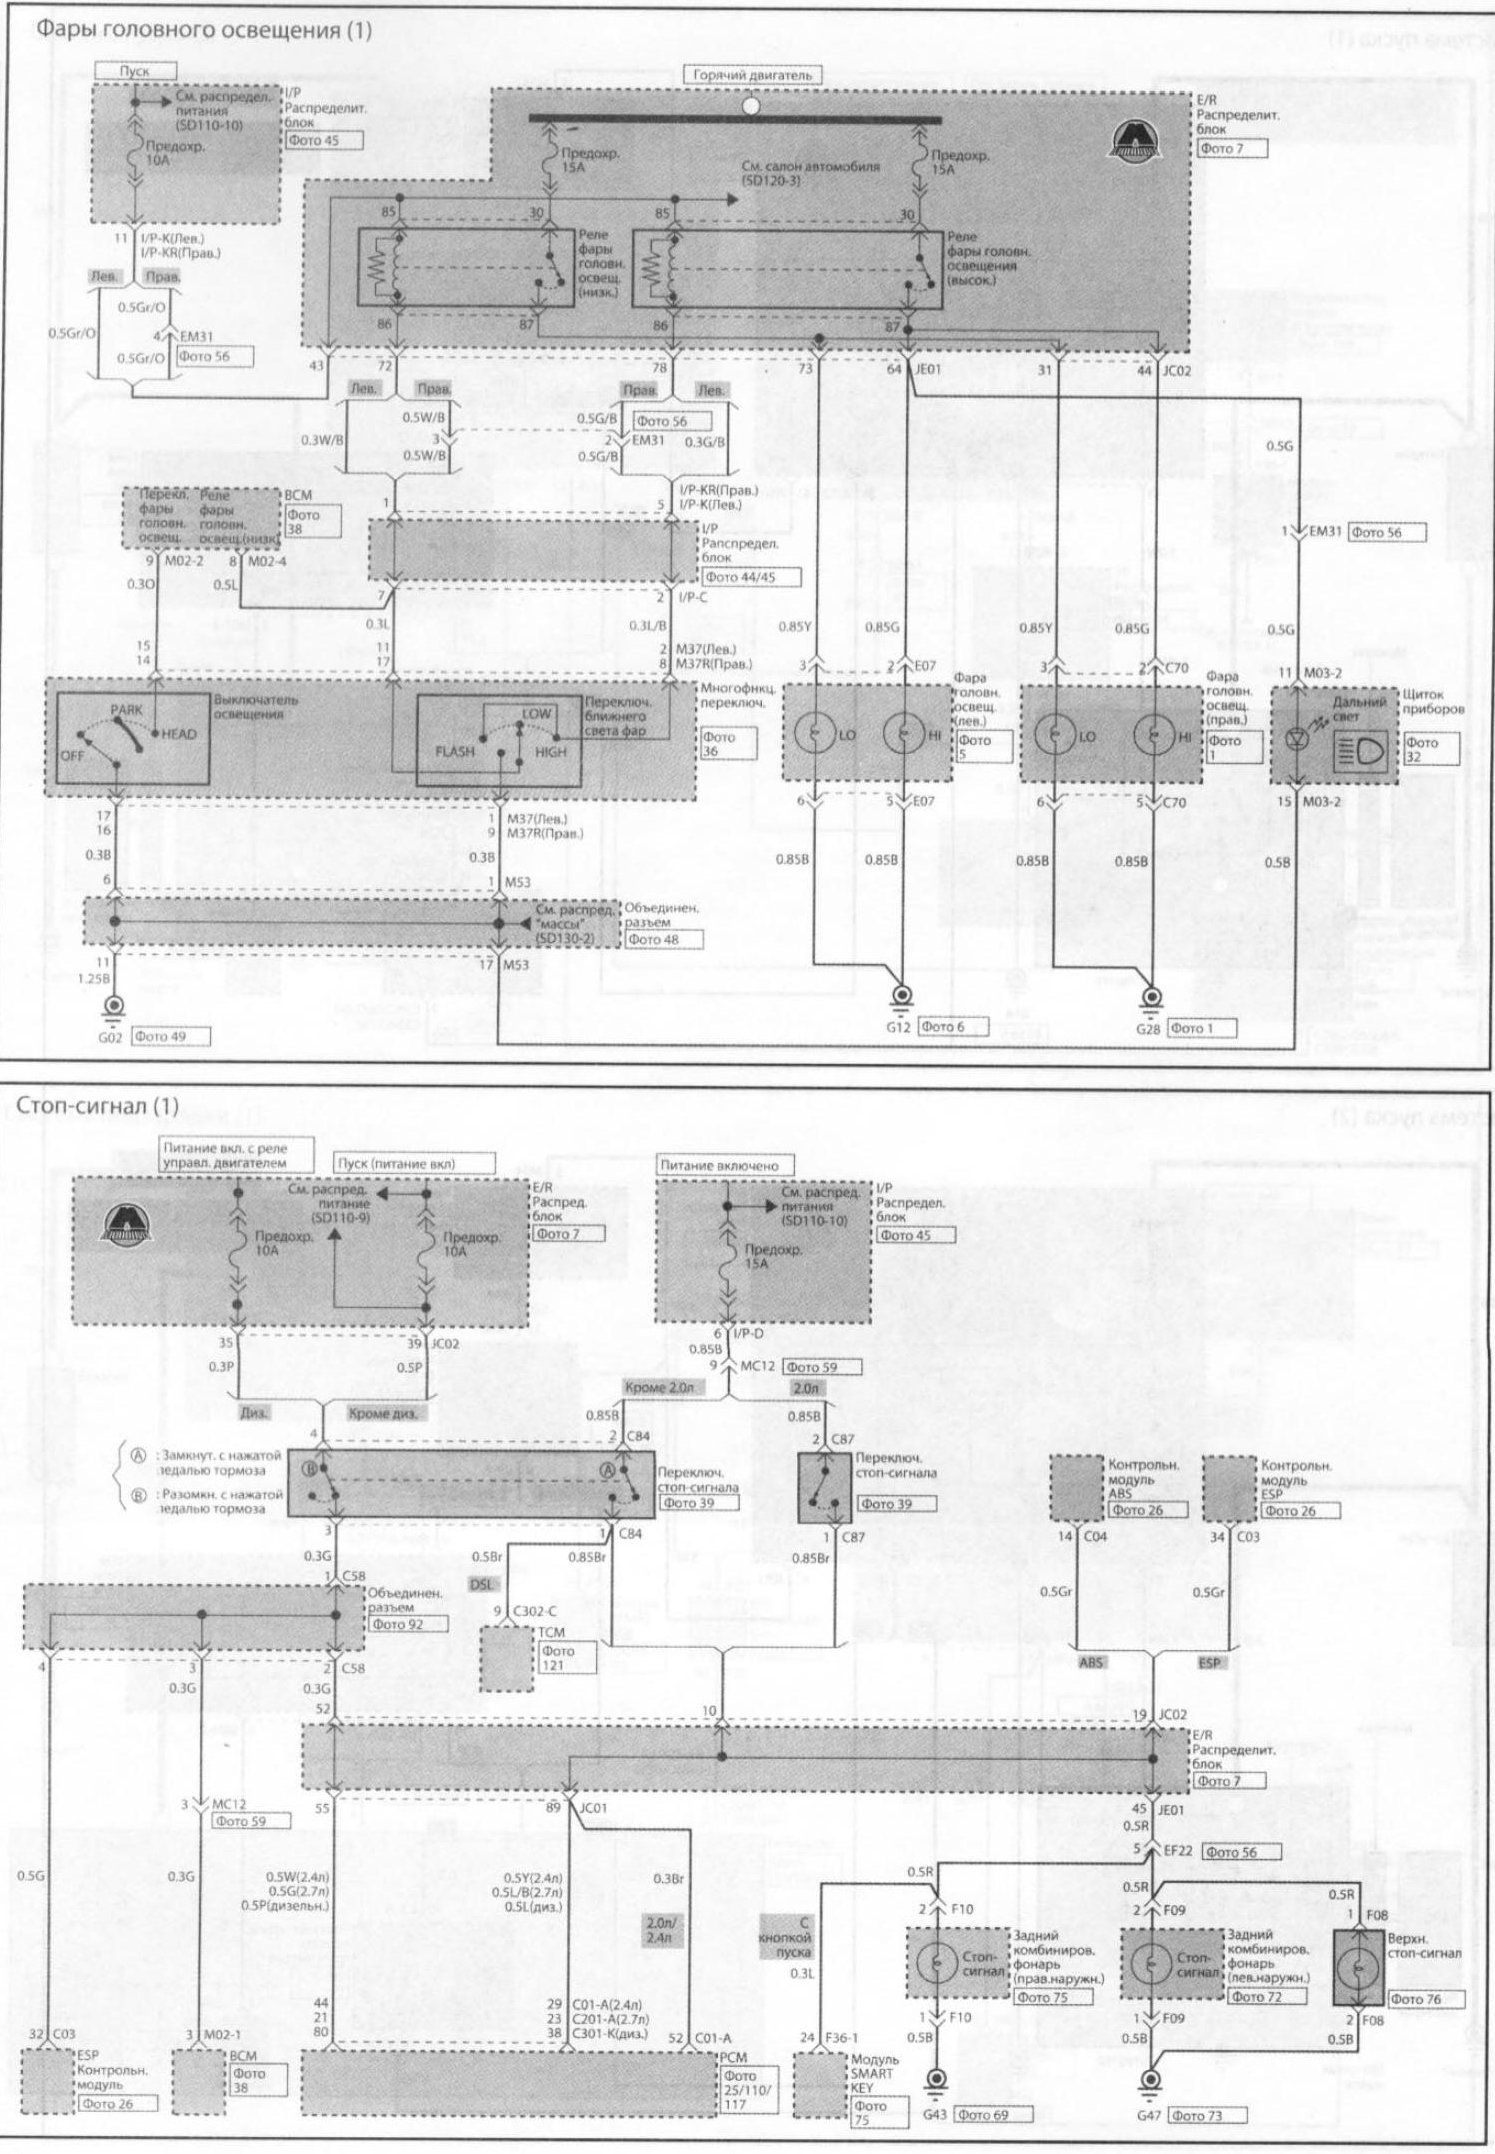 2003 Kia Sorento Ecu Wiring Diagram from www.automotive-manuals.net